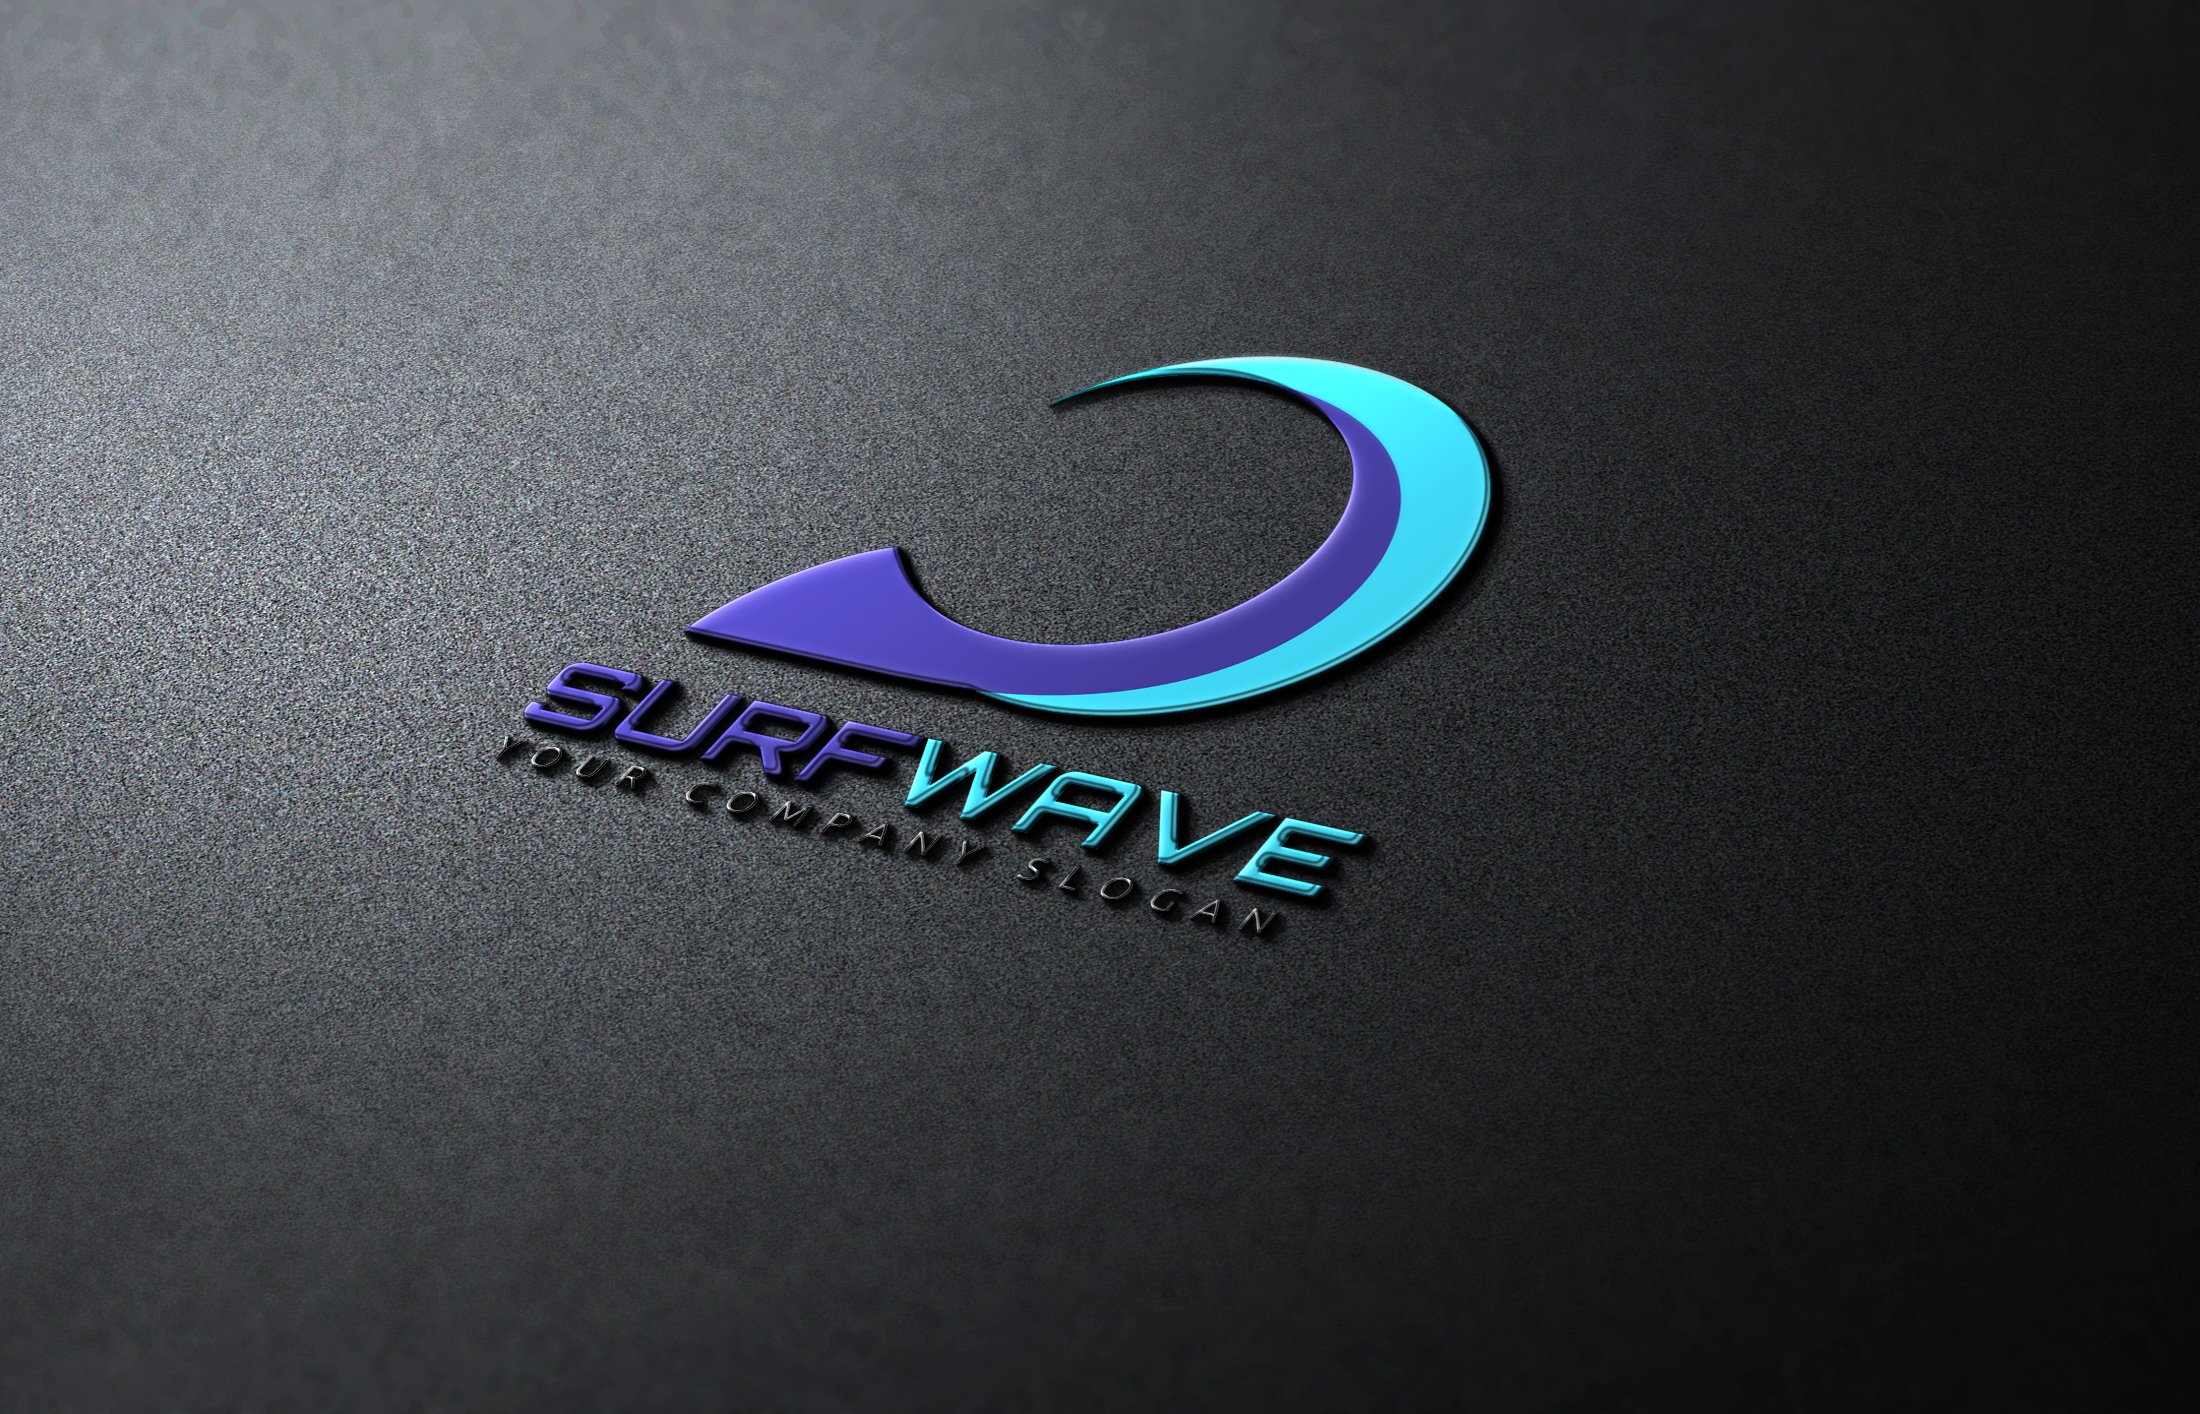 Matte black background with glance blue wave logo.